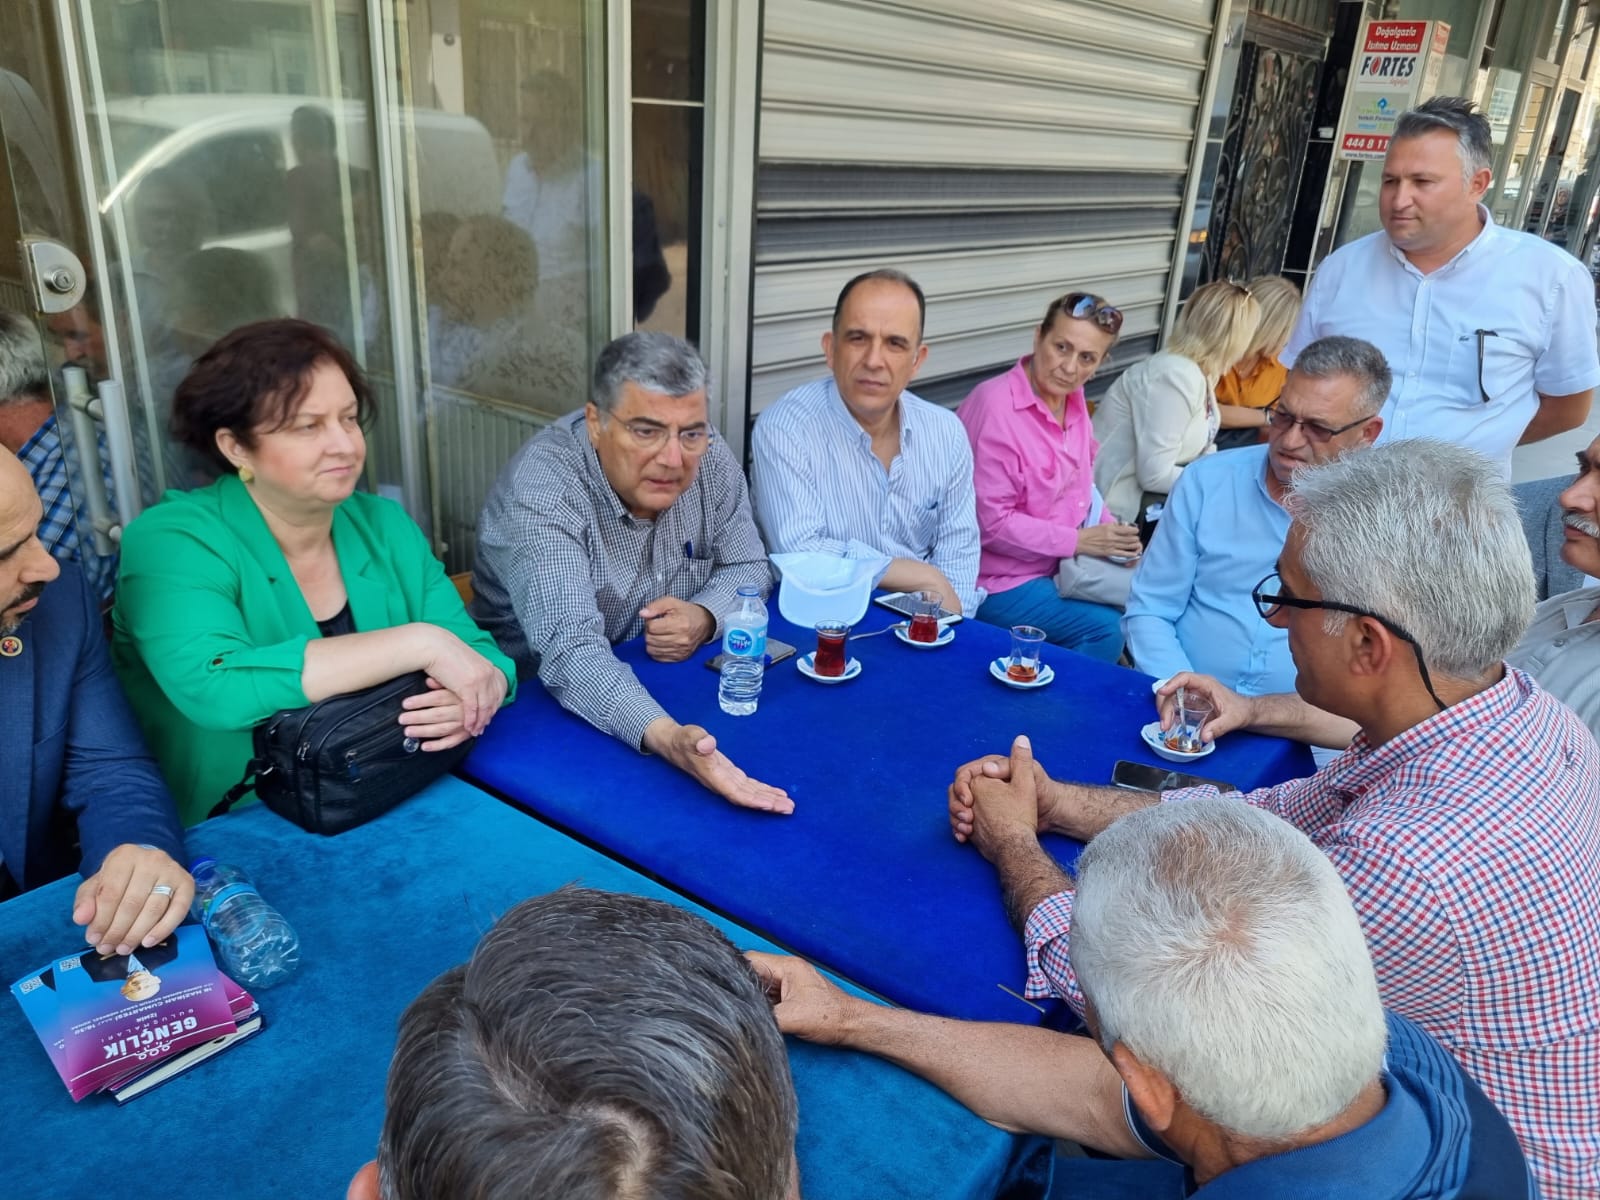 Kamil Okyay Sındır CHP İzmir Milletvekili Kamil Okyay Sındır, Bornova Doğanlar ve Mevlana Mahallelerinde esnaf ziyareti gerçekleştirdi, kahvehane toplantılarında vatandaşlarla bir araya geldi.